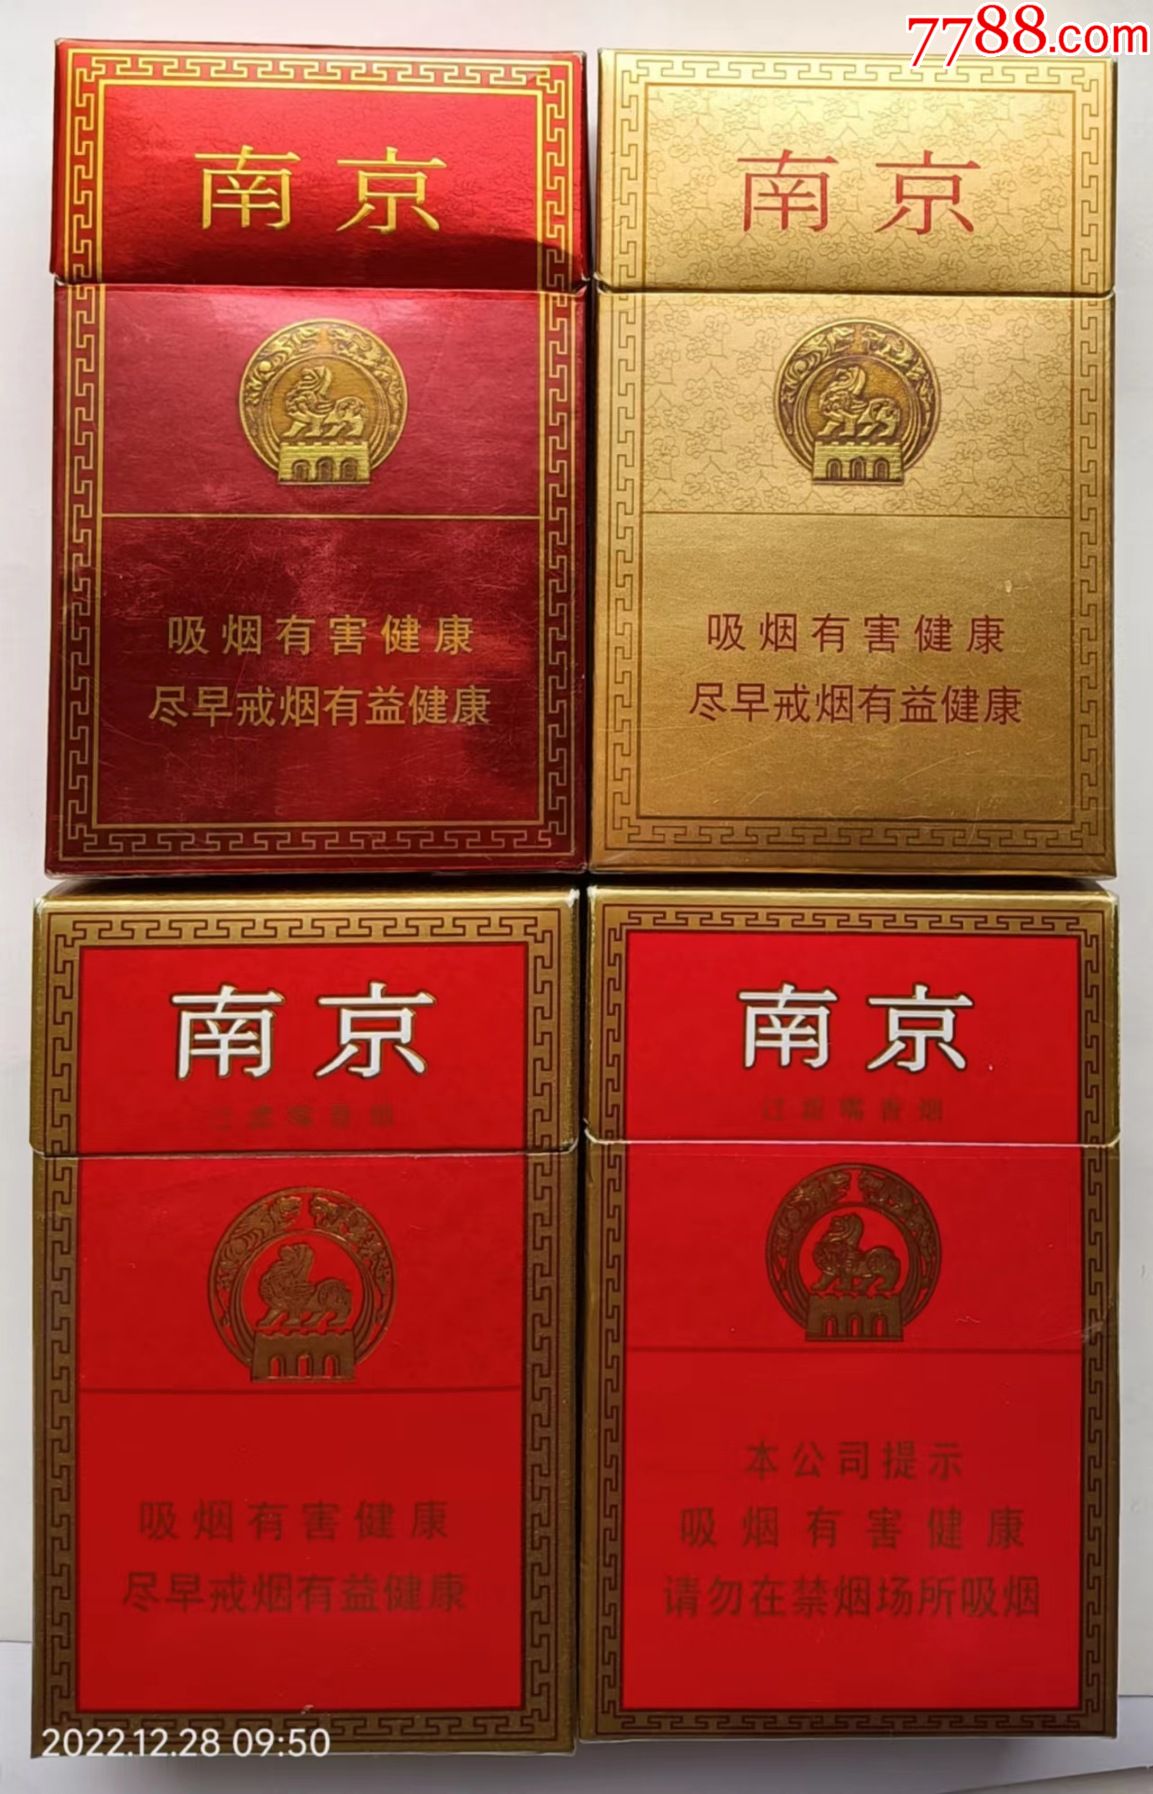 南京烟标,4枚不同,江苏中烟工业有限责任公司出品,焦11